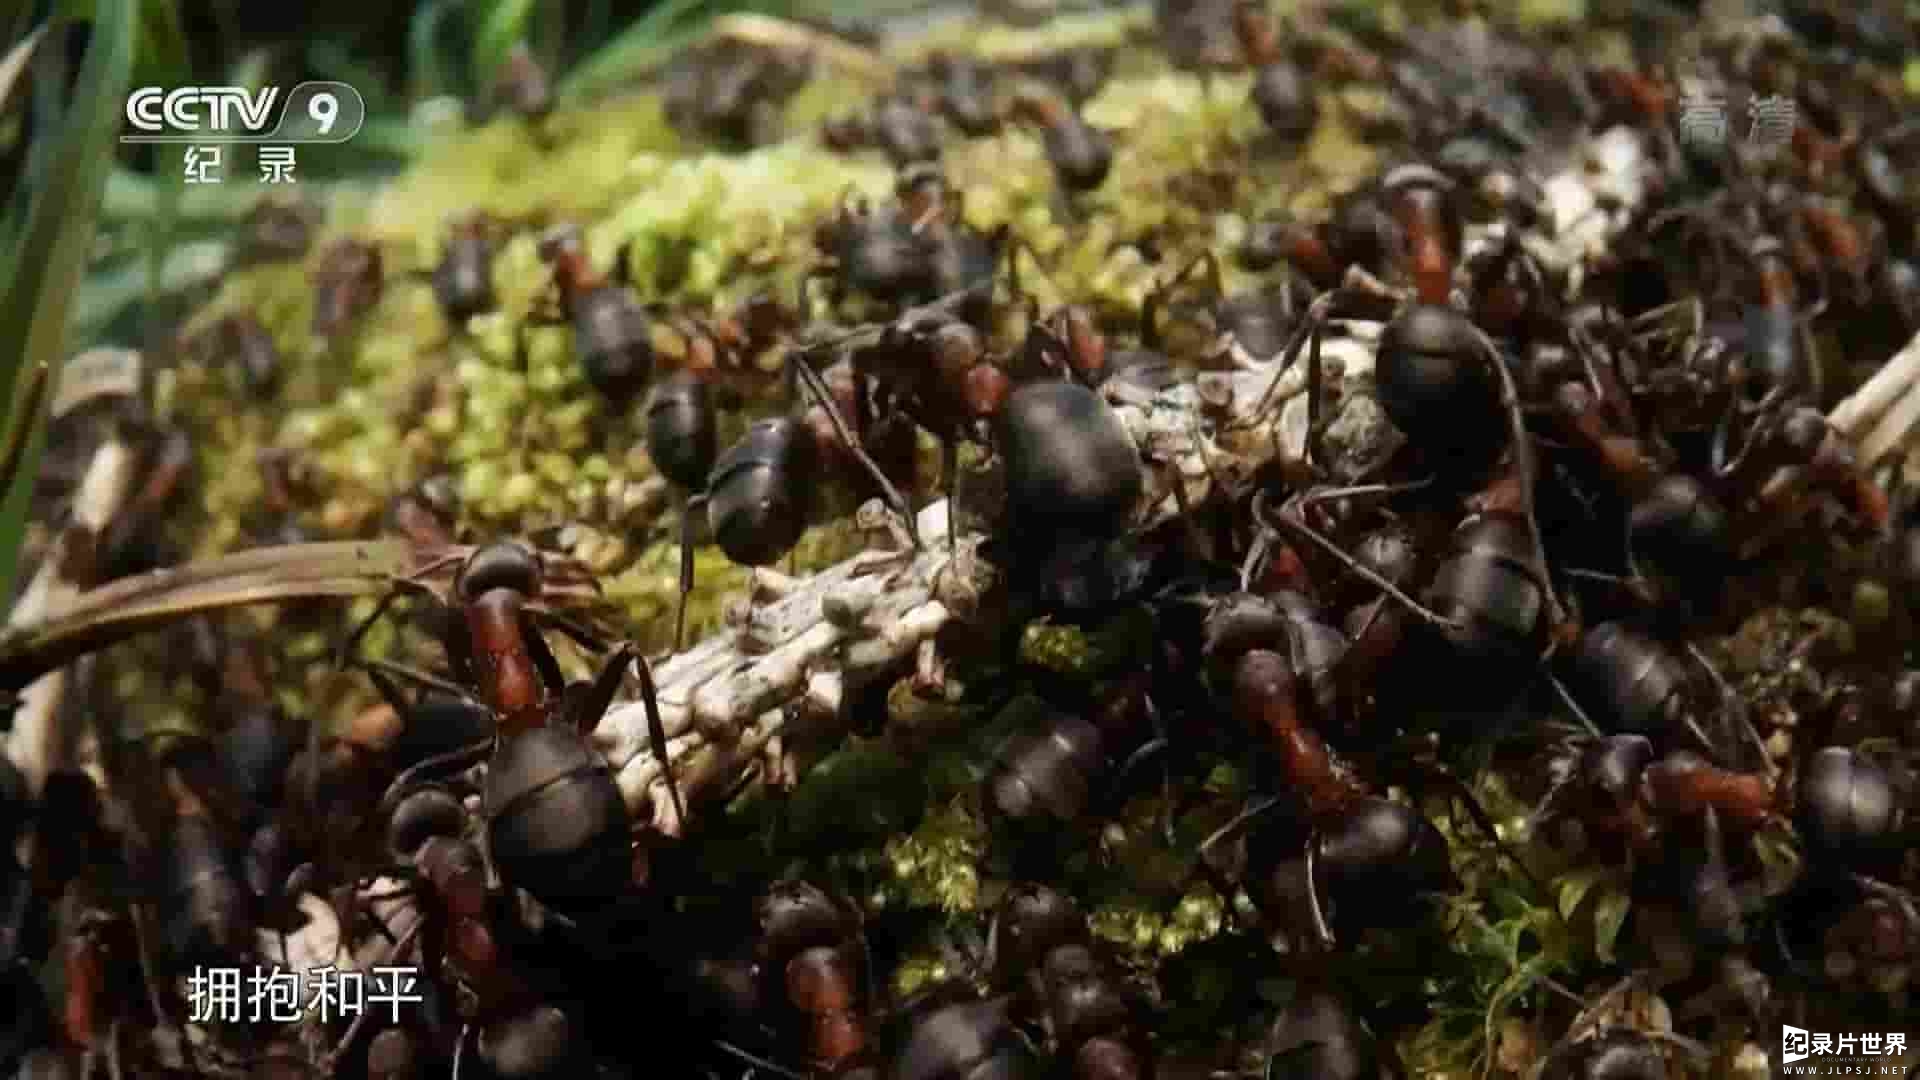 英国纪录片《大卫·爱登堡 蚂蚁山/阿滕伯勒的蚂蚁山 David Attenborough’s Ant Mountain 2018》全1集